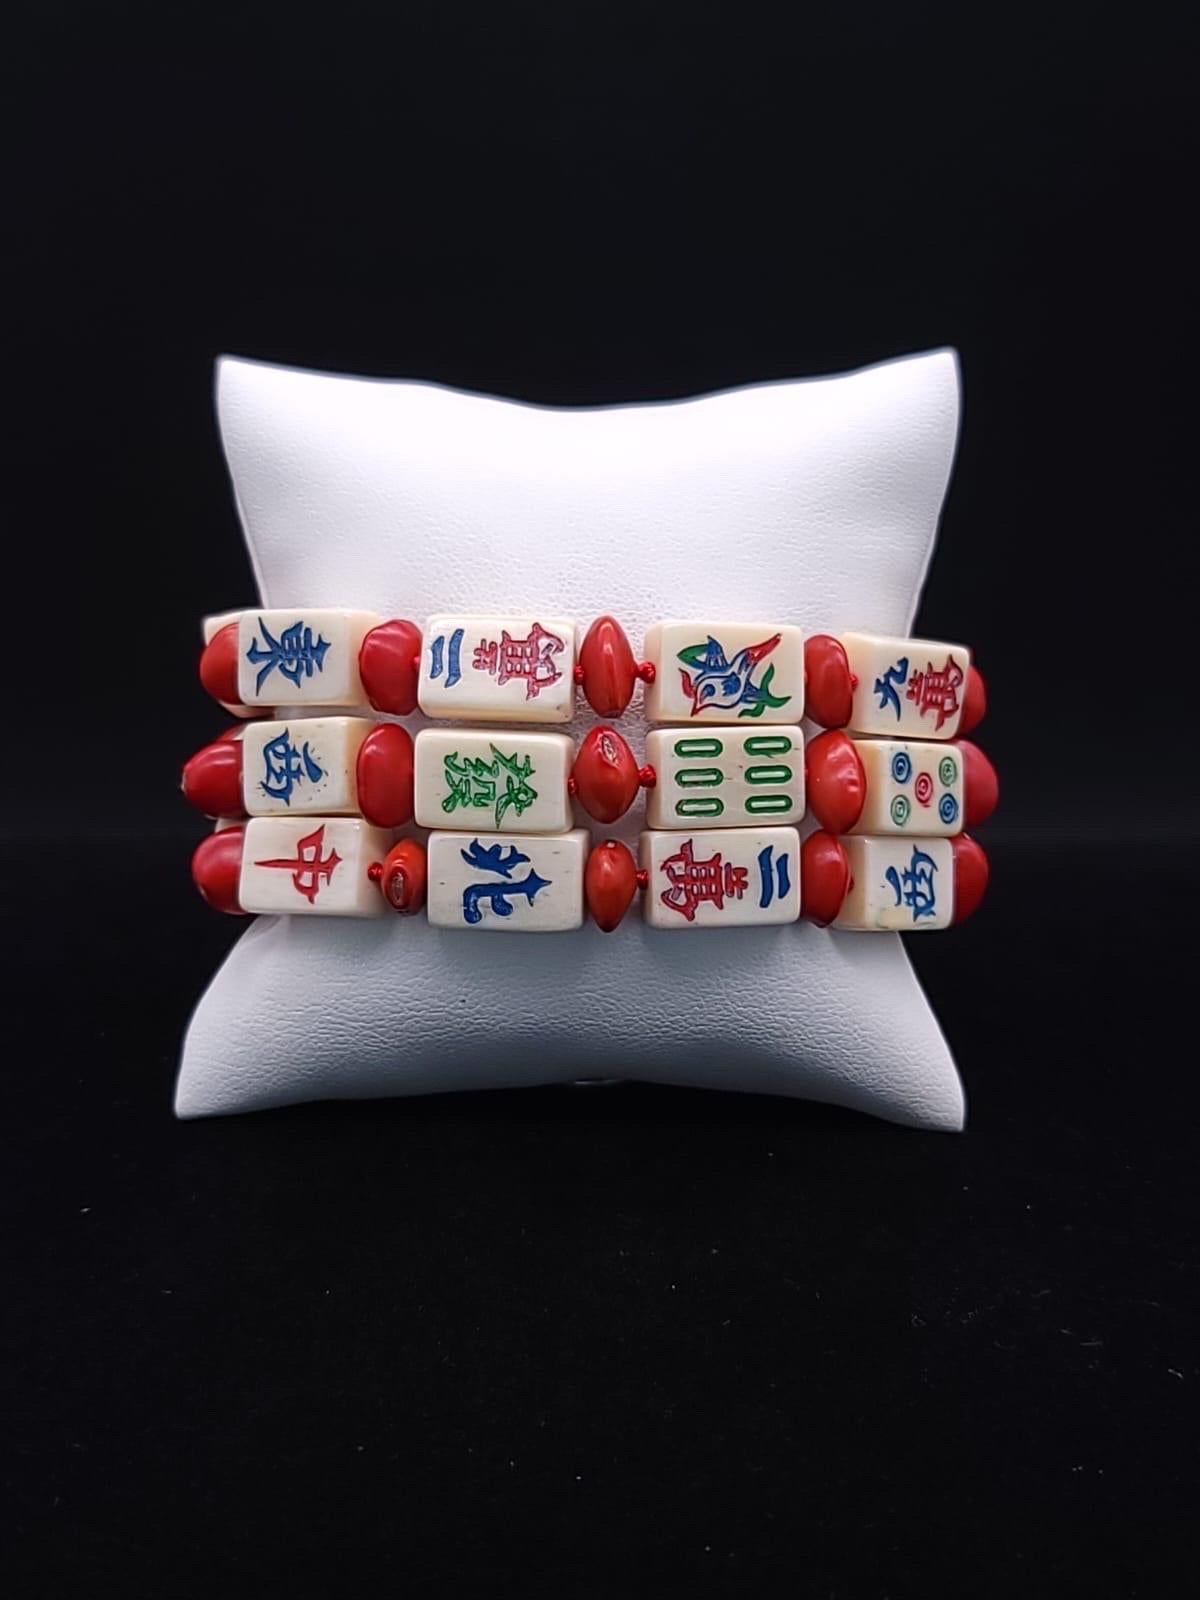 A.Jeschel Stunning mahjong tiles bracelet. 13